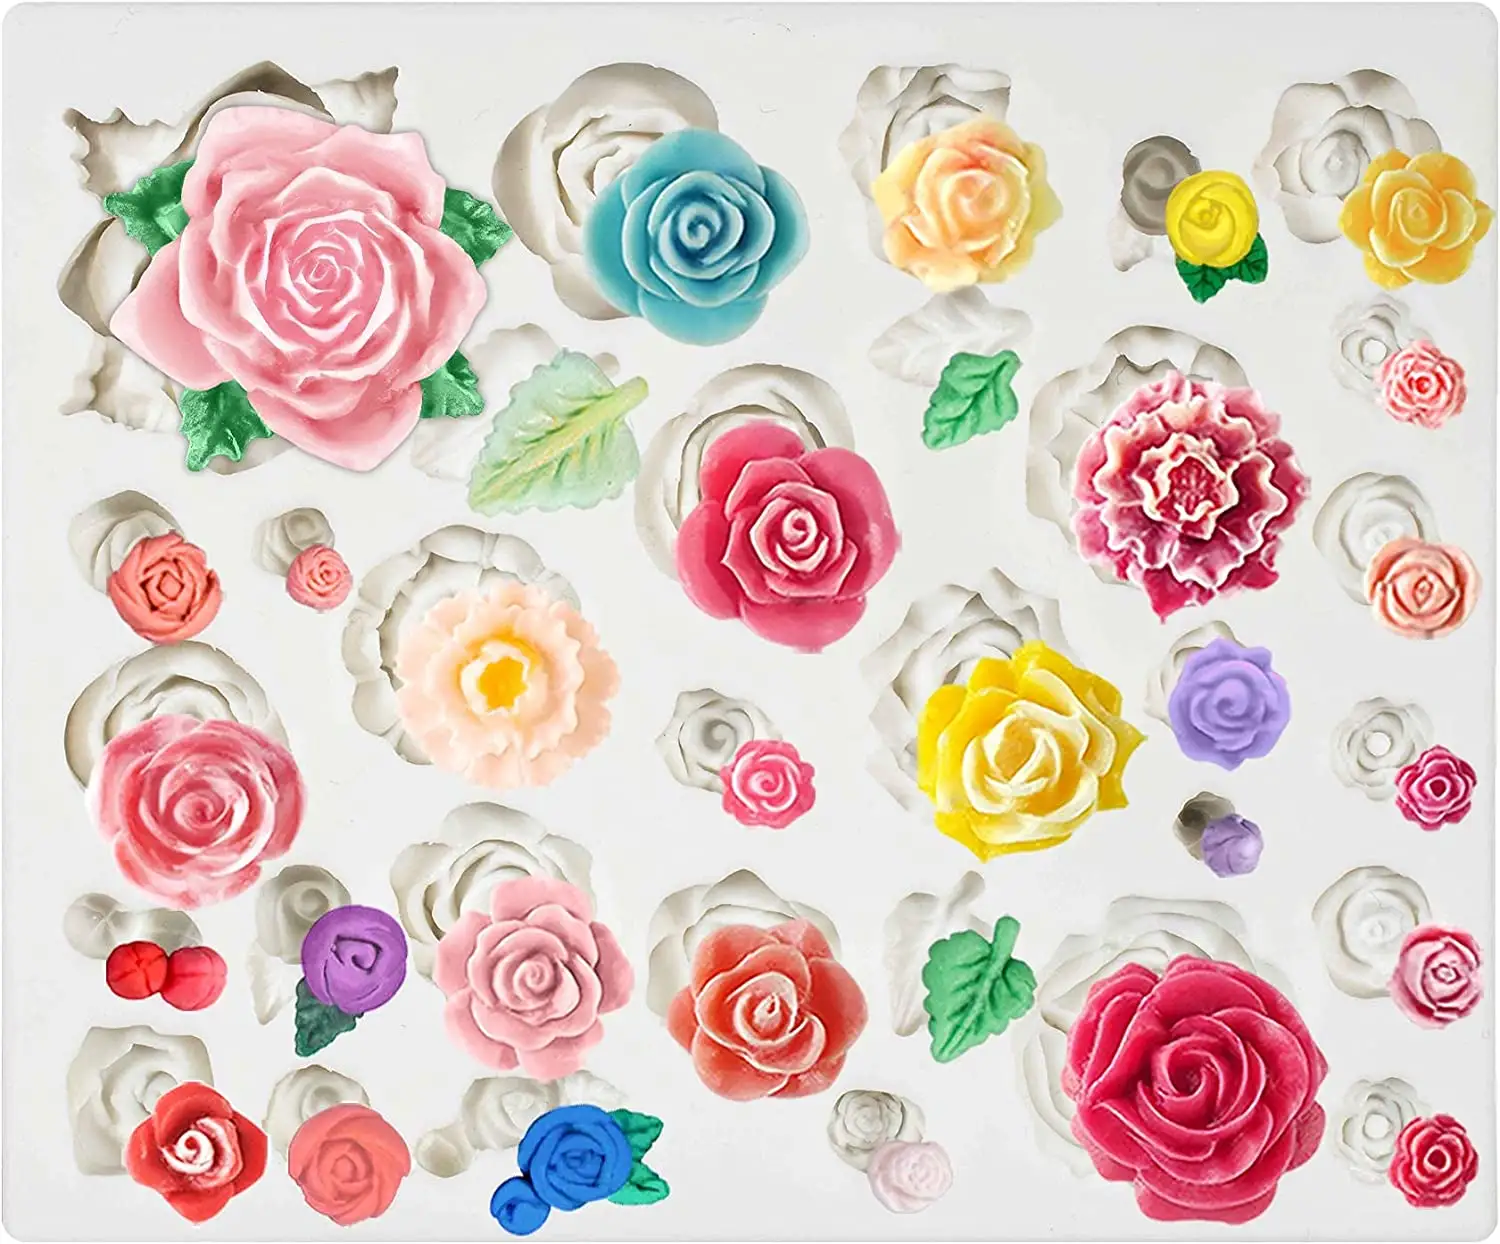 Roses Flowrings Sett Bonbons Moule En Silicone pour Sugaramgft Décoration De Gâteau 3D Fondant Moule Fleurs Logo Personnalisé Moules Gâteau Outils